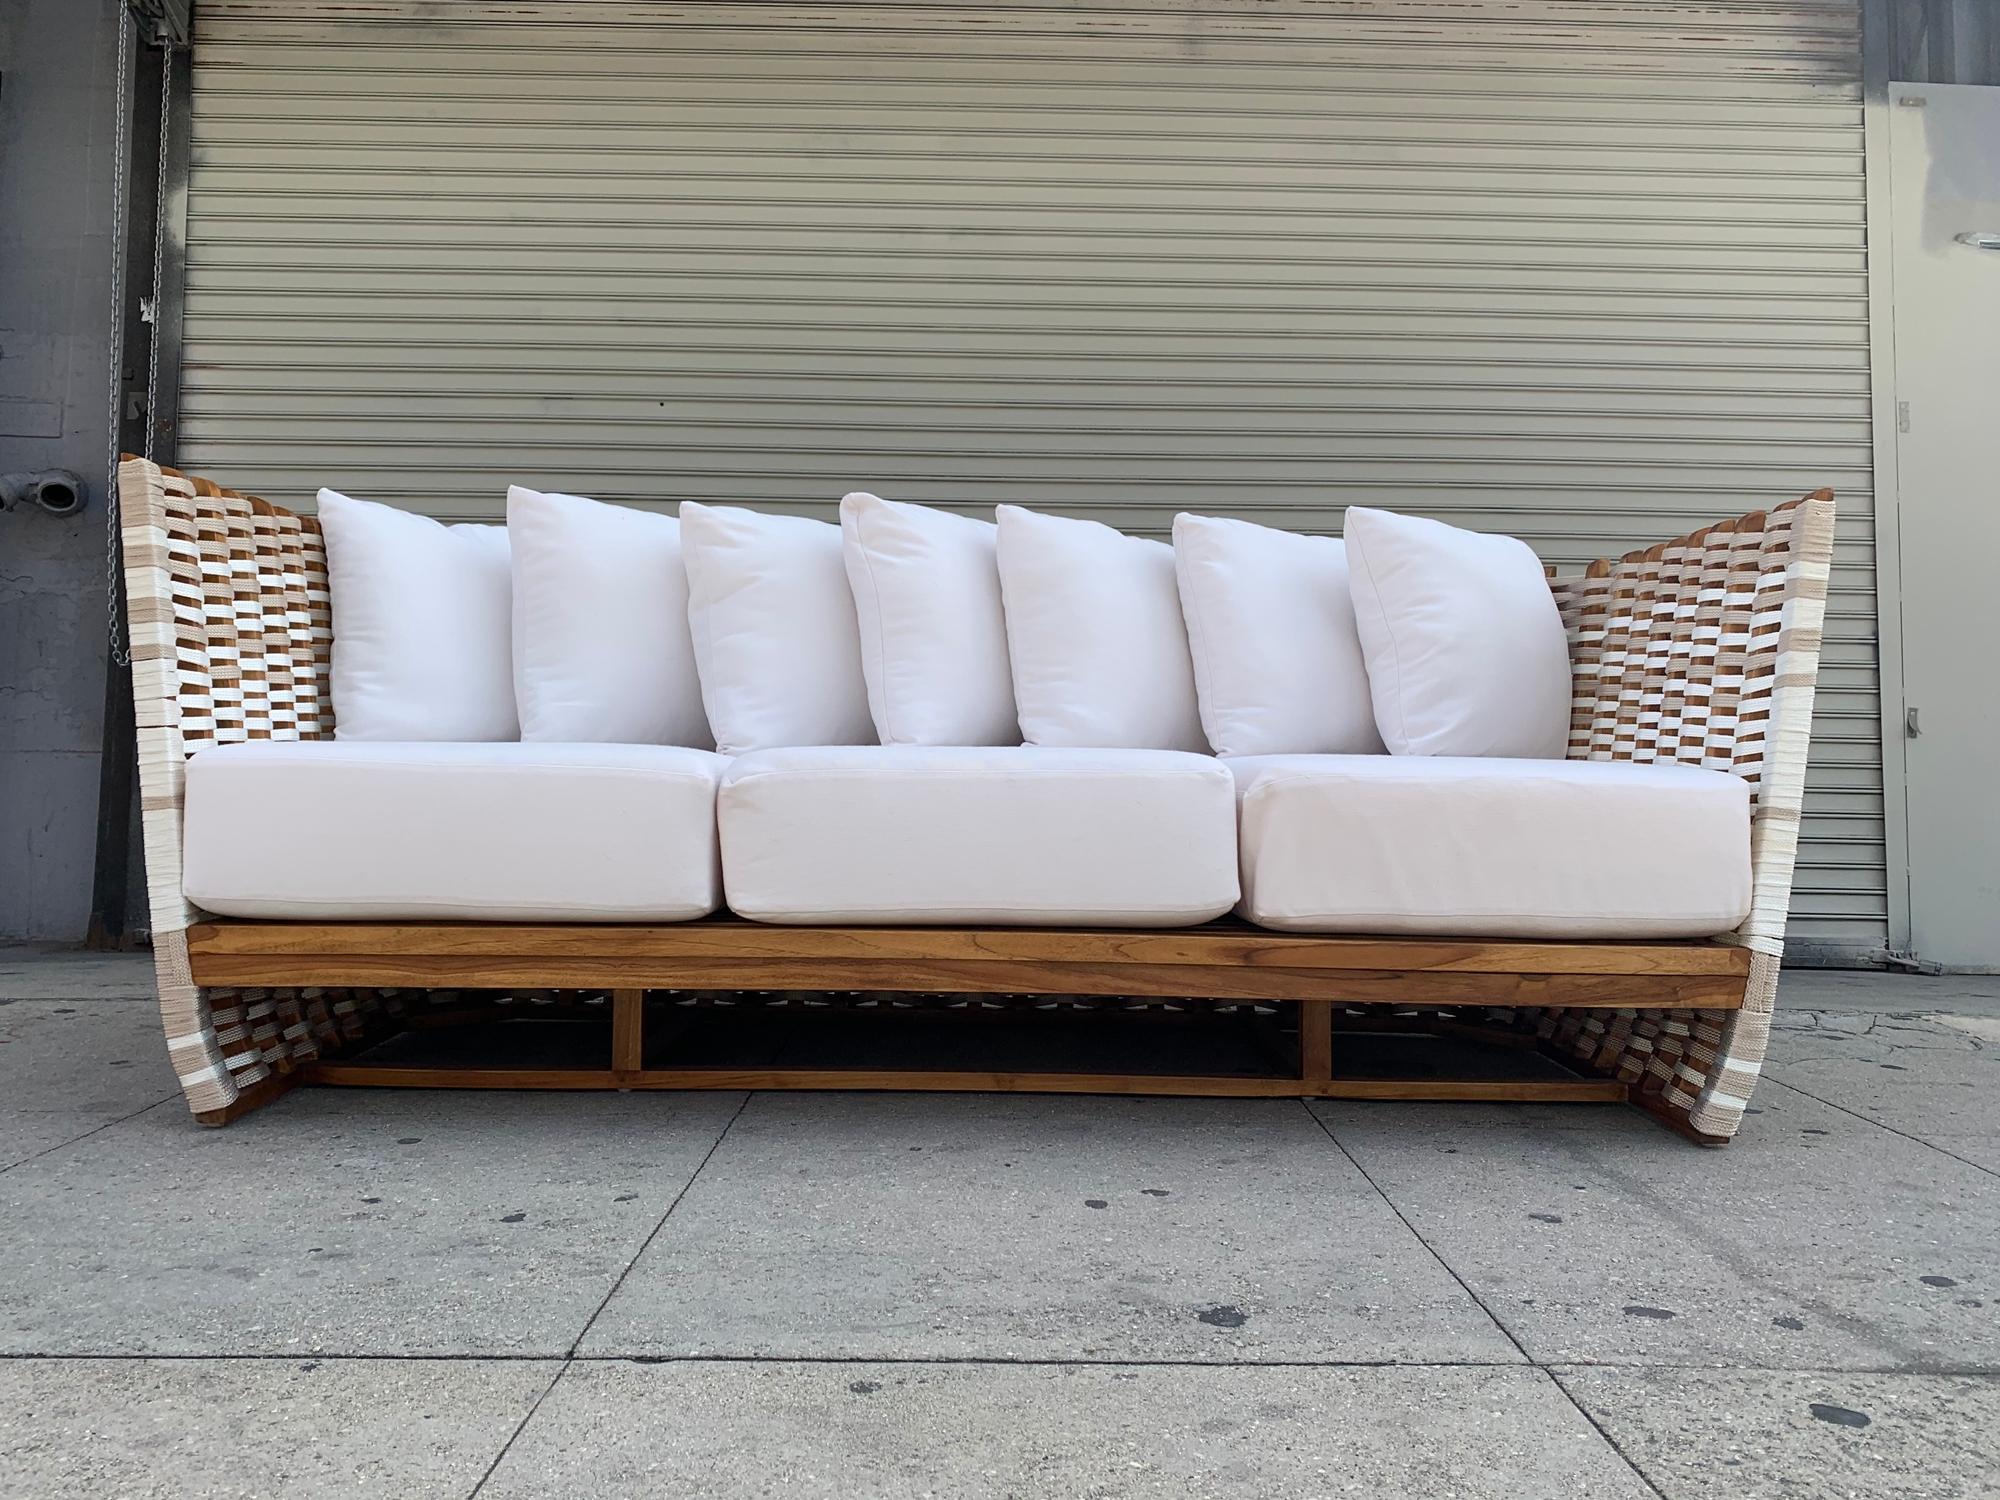 Contemporary San Martin Outdoor Sofa